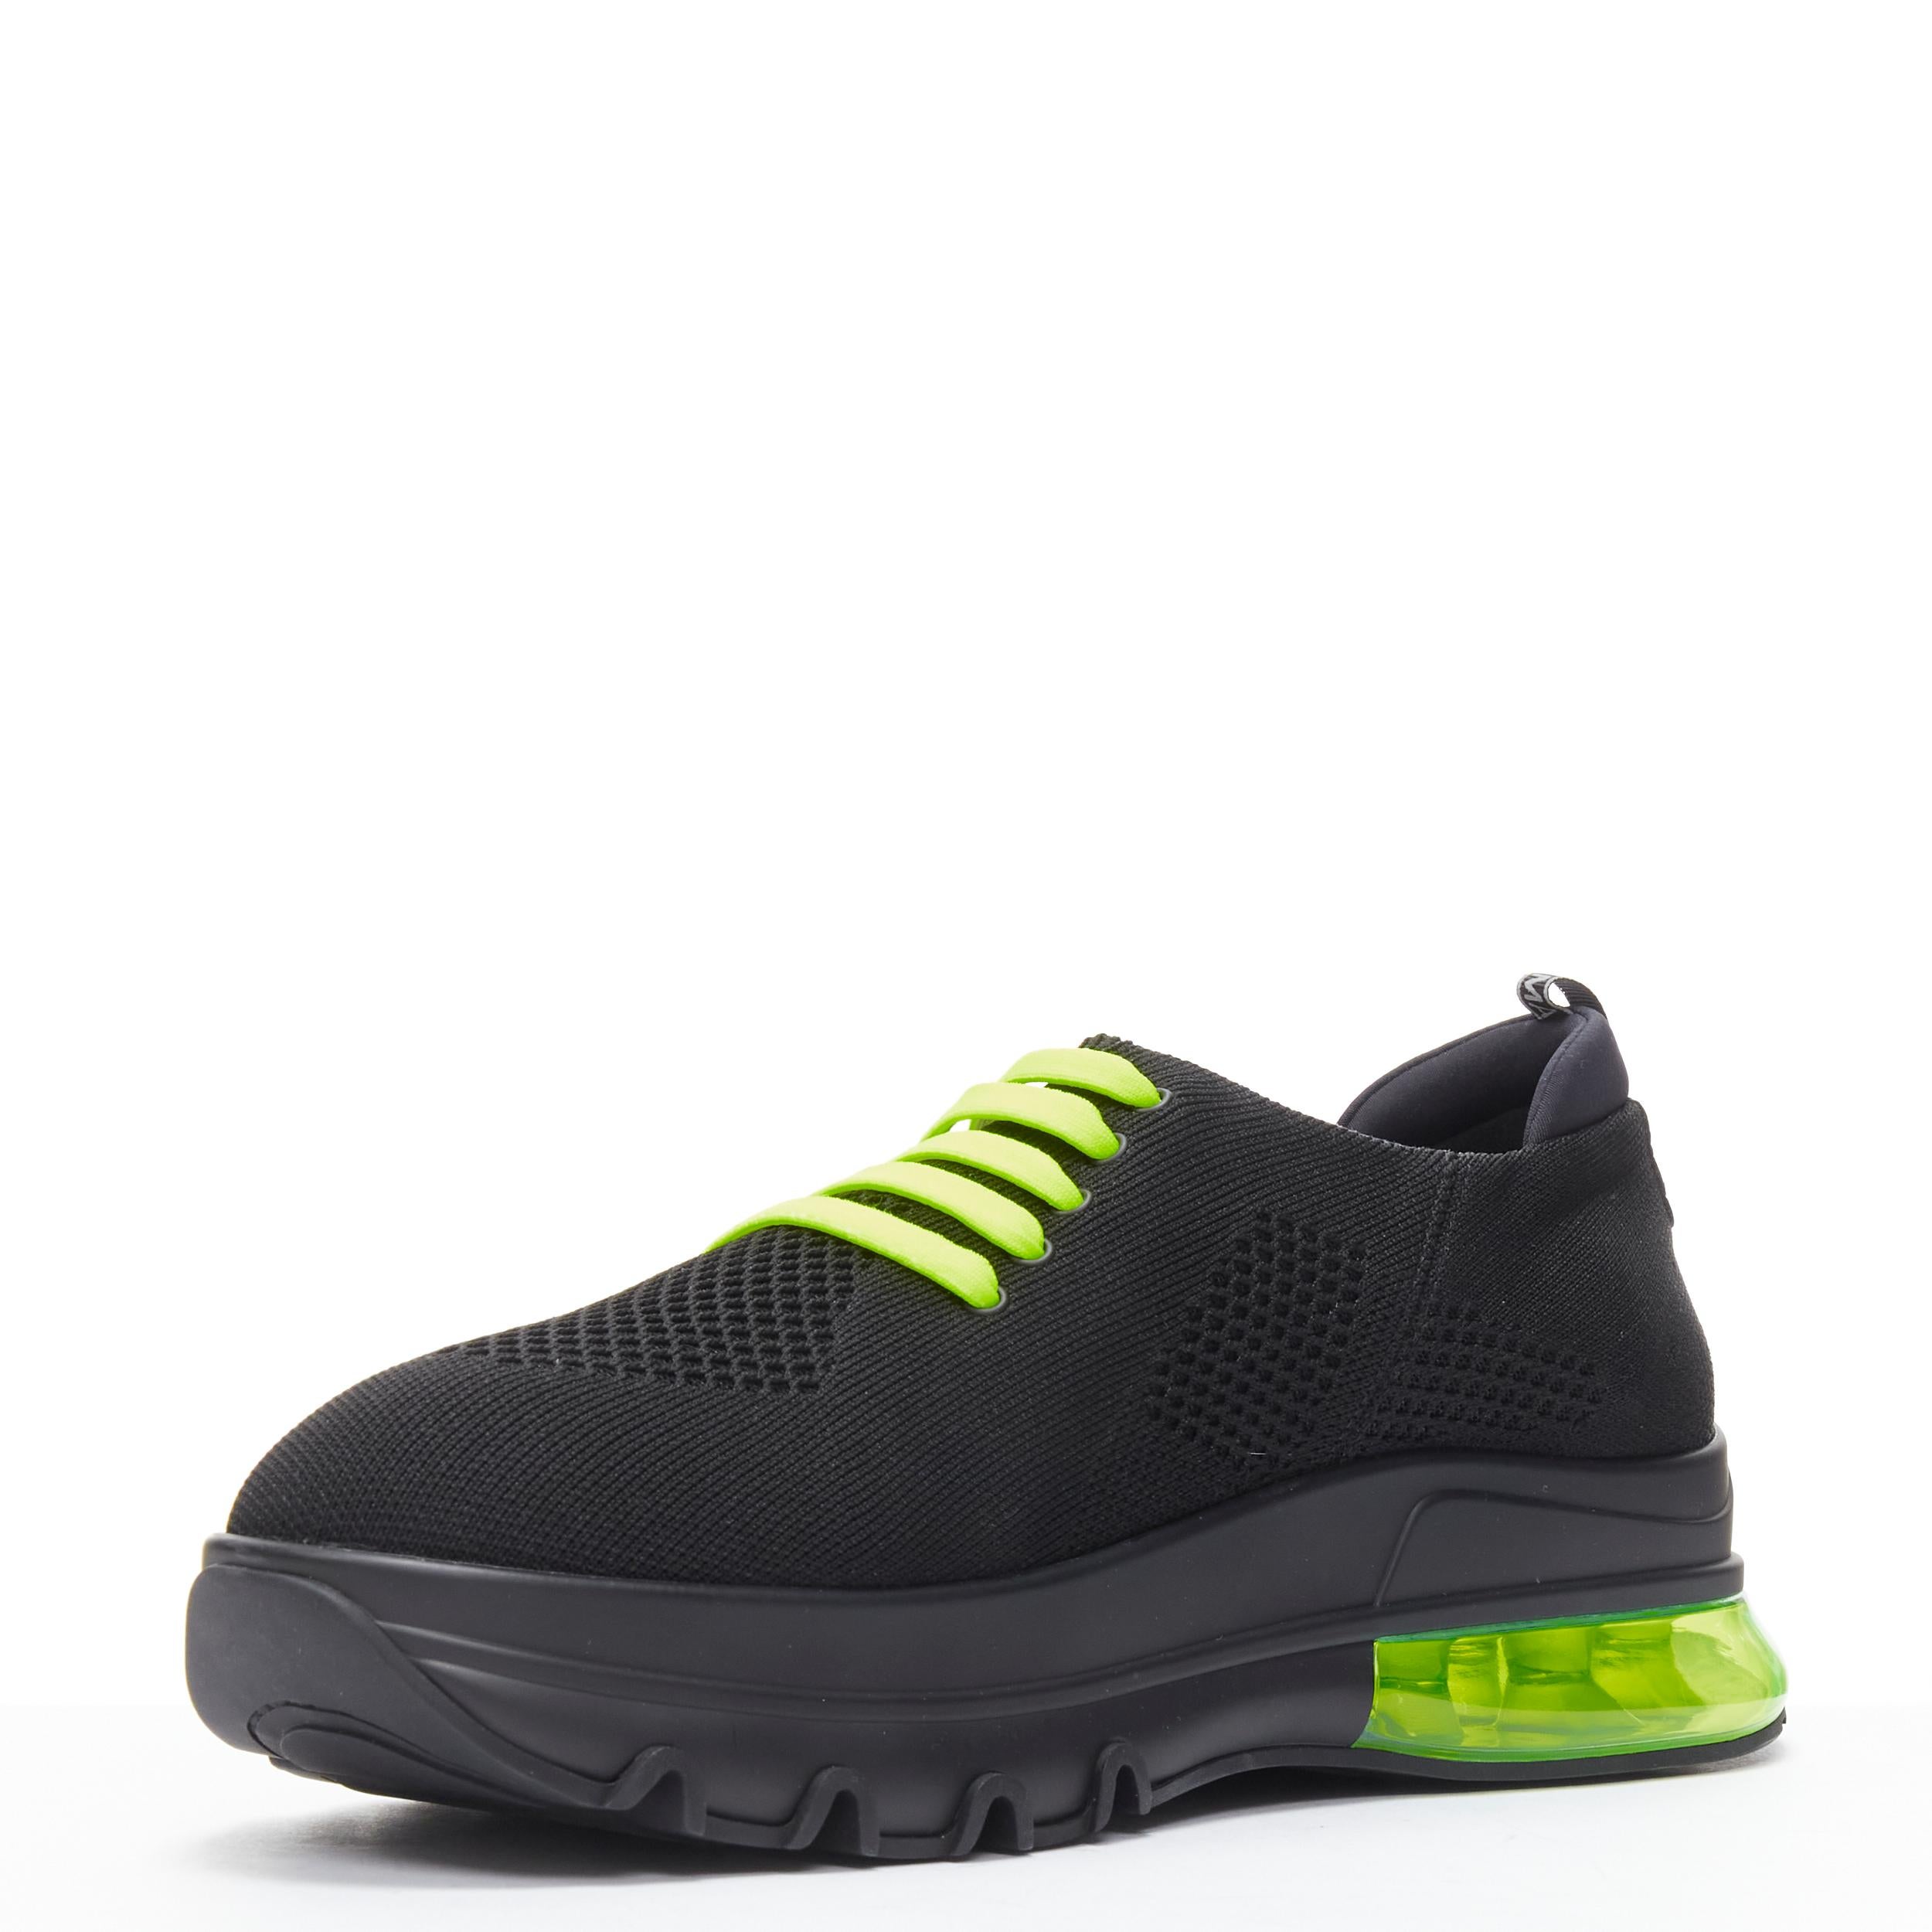 neu FENDI 2019 schwarz stricken neon gelb Luftsohle niedrigen Läufer Sneaker 7E1234 EU44 Herren im Angebot